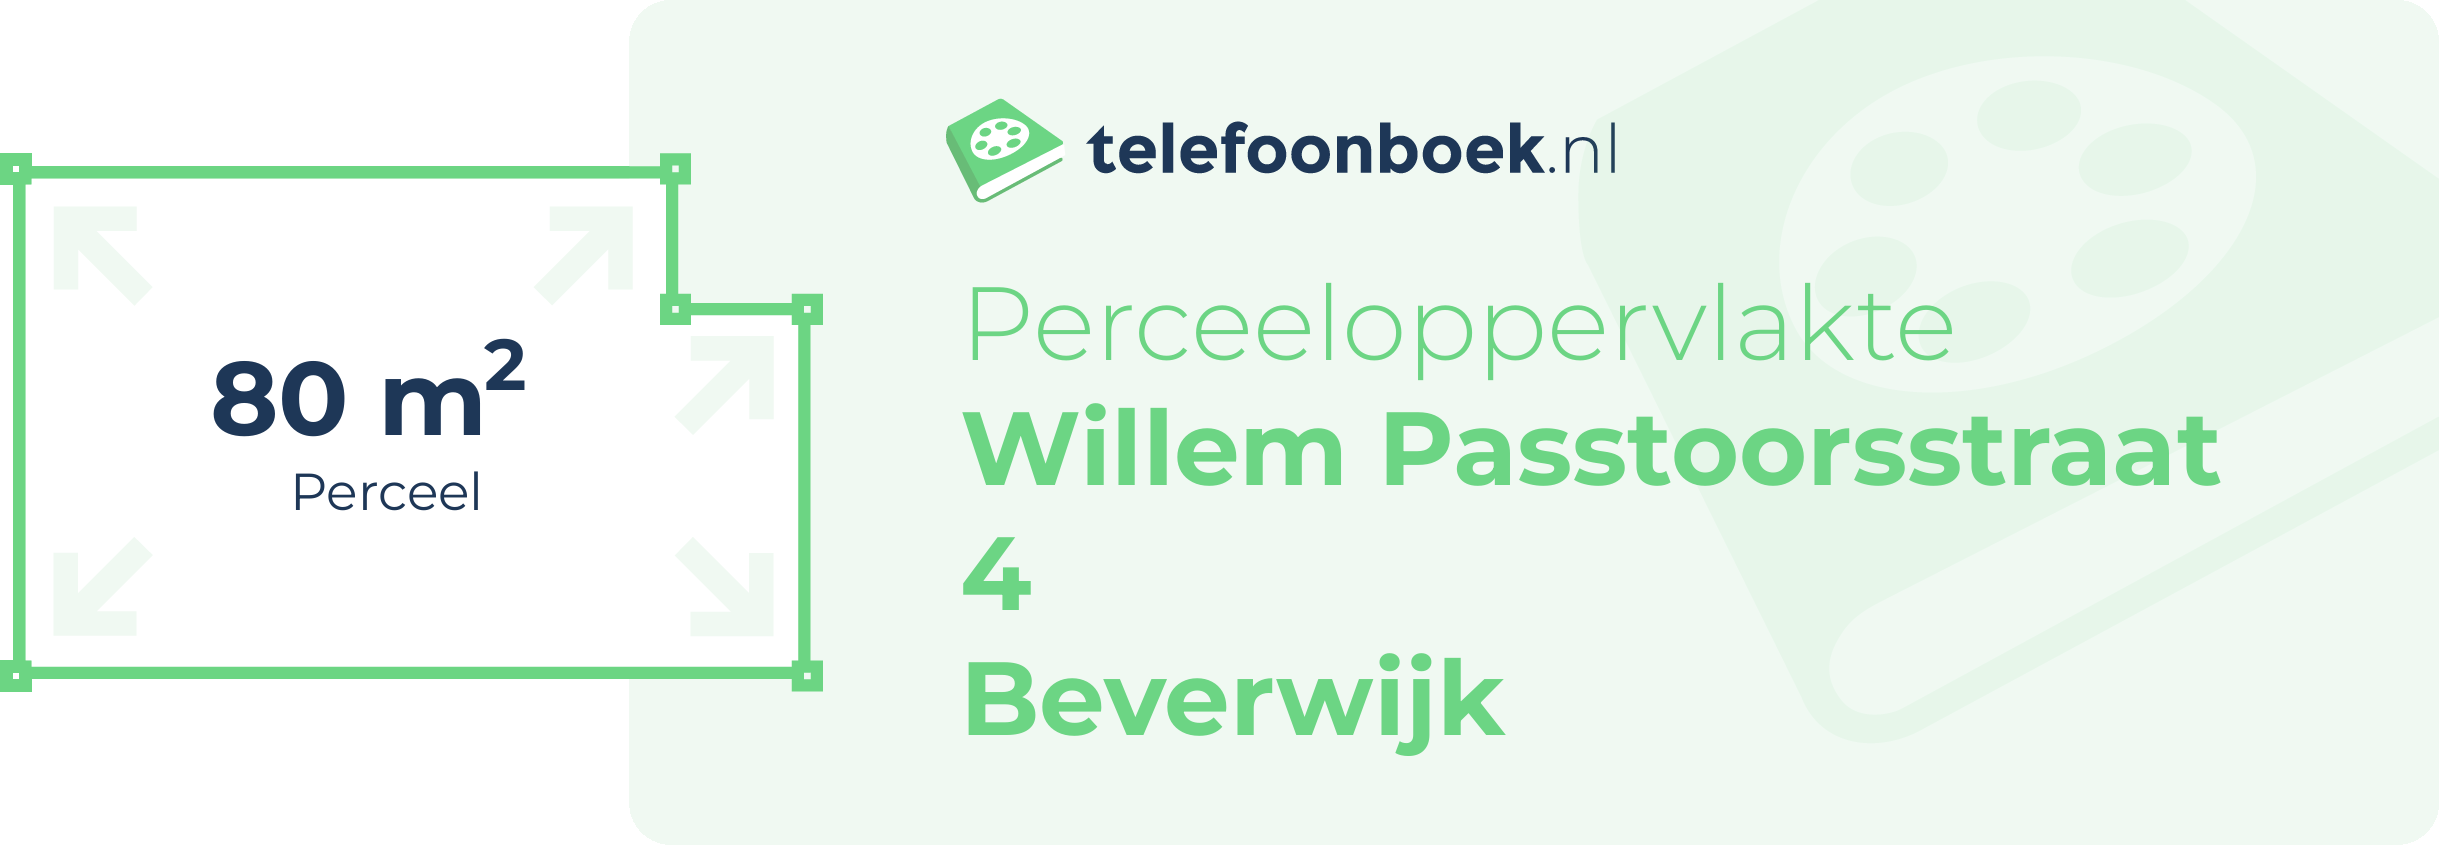 Perceeloppervlakte Willem Passtoorsstraat 4 Beverwijk